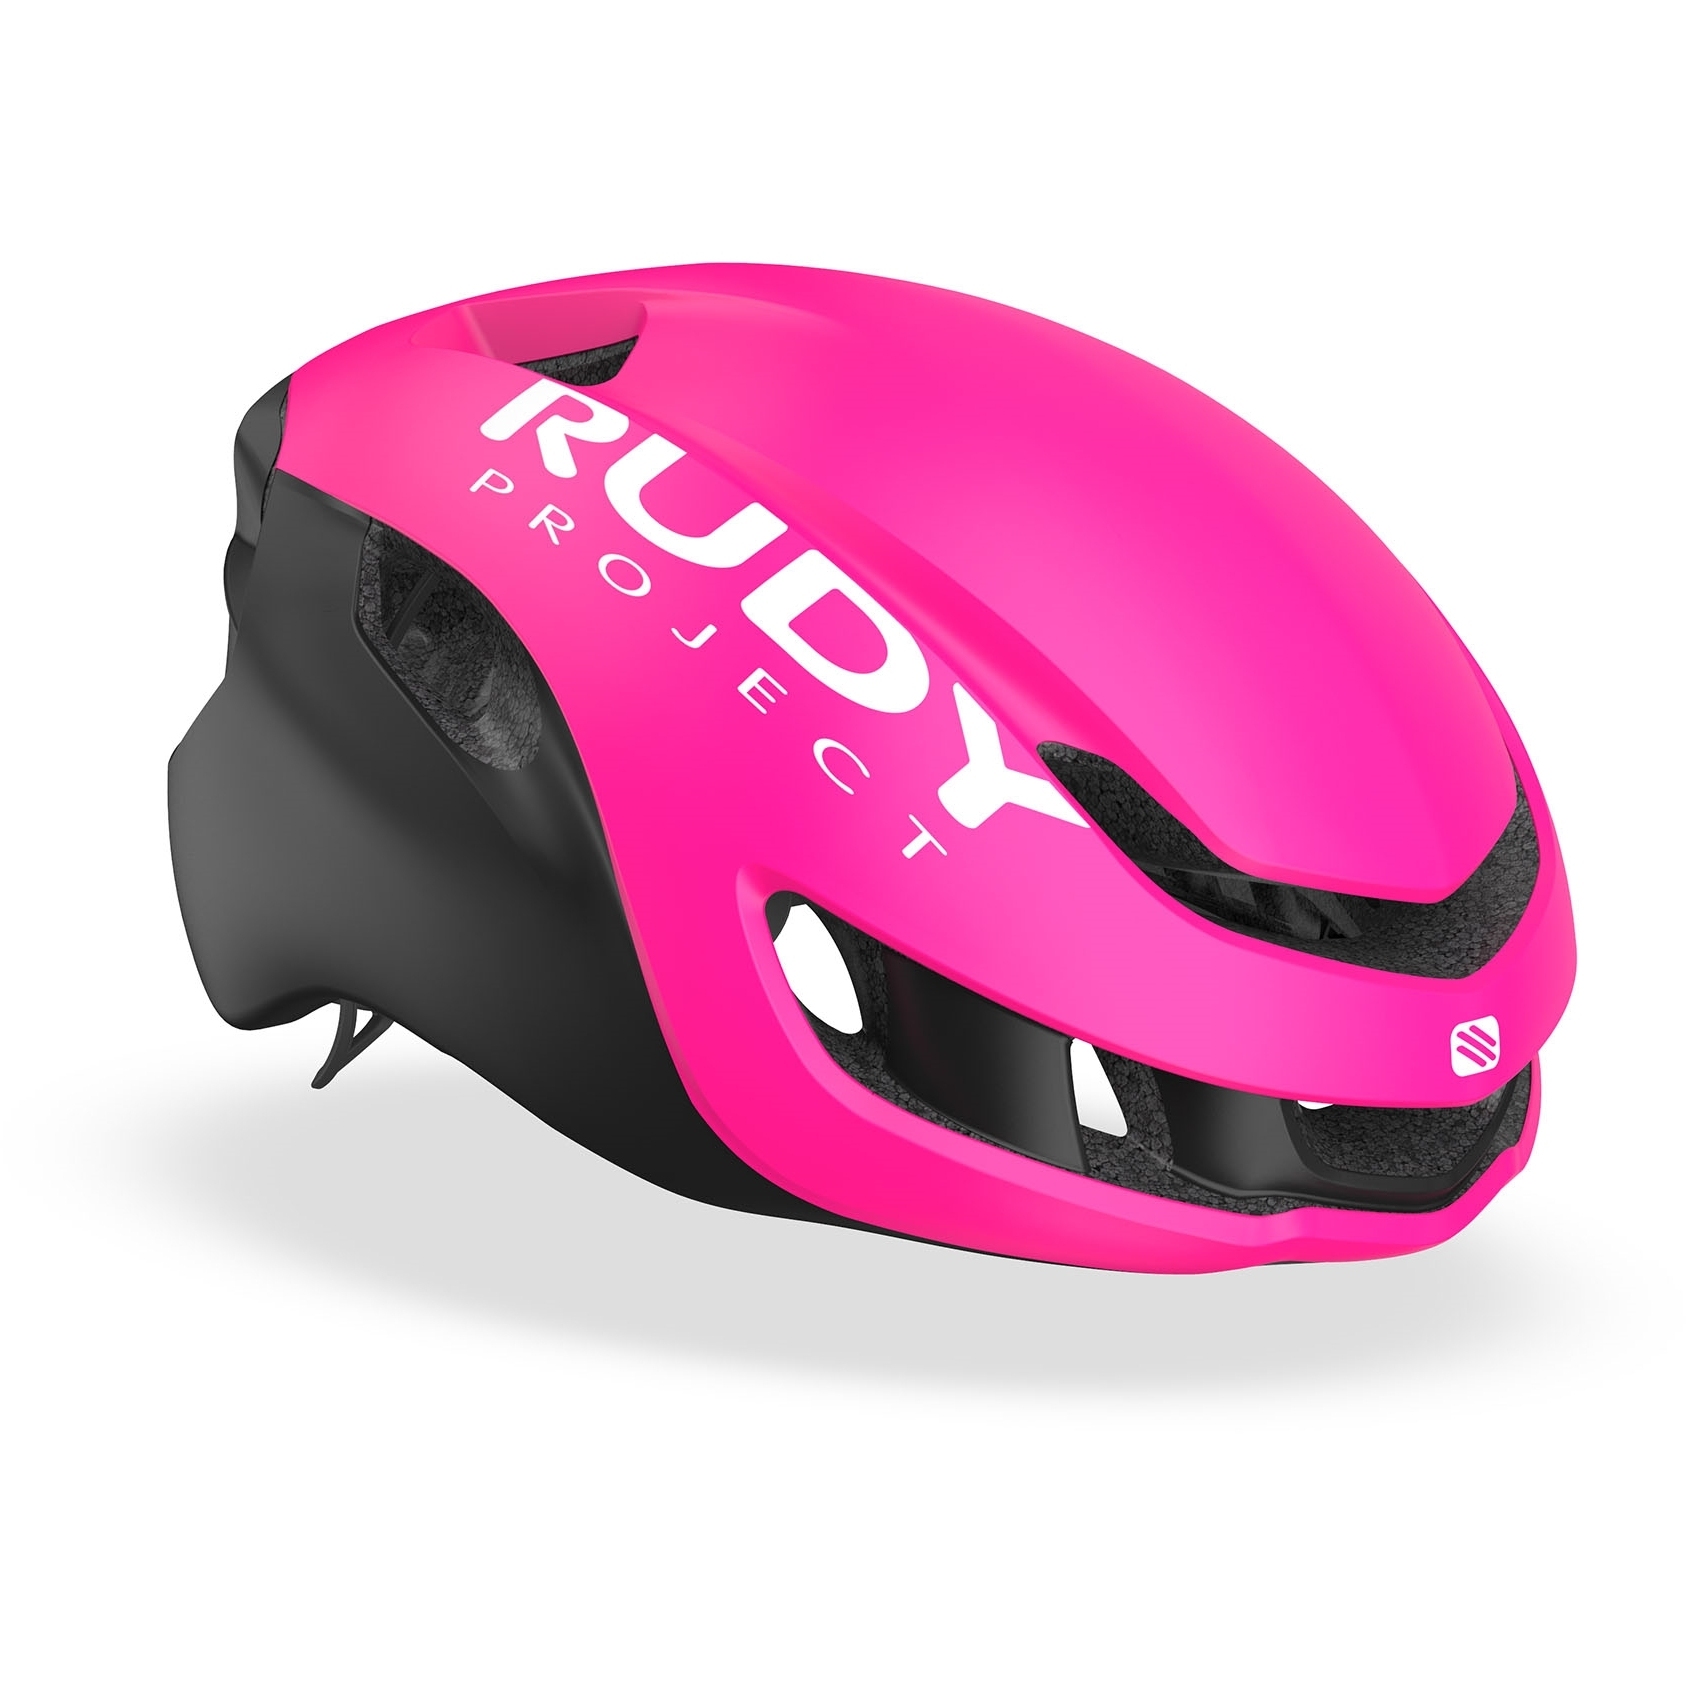 Produktbild von Rudy Project Nytron Helm - Pink Fluo / Black Matte